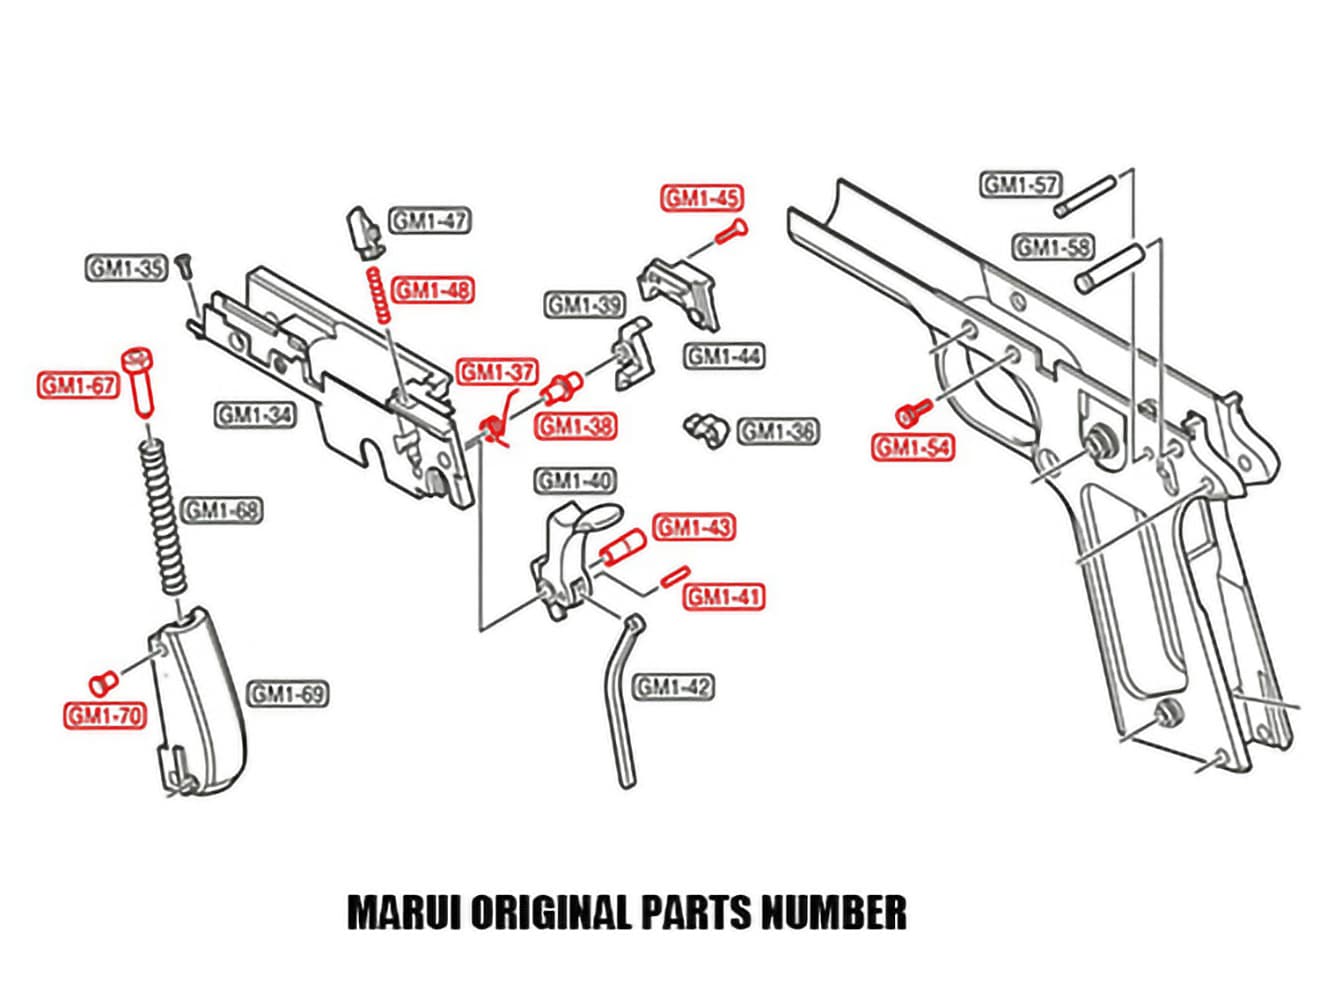 GUARDER ハンマーシャーシ インナーパーツセット for マルイ M1911A1/MEU/M45A1/S70/Detonics